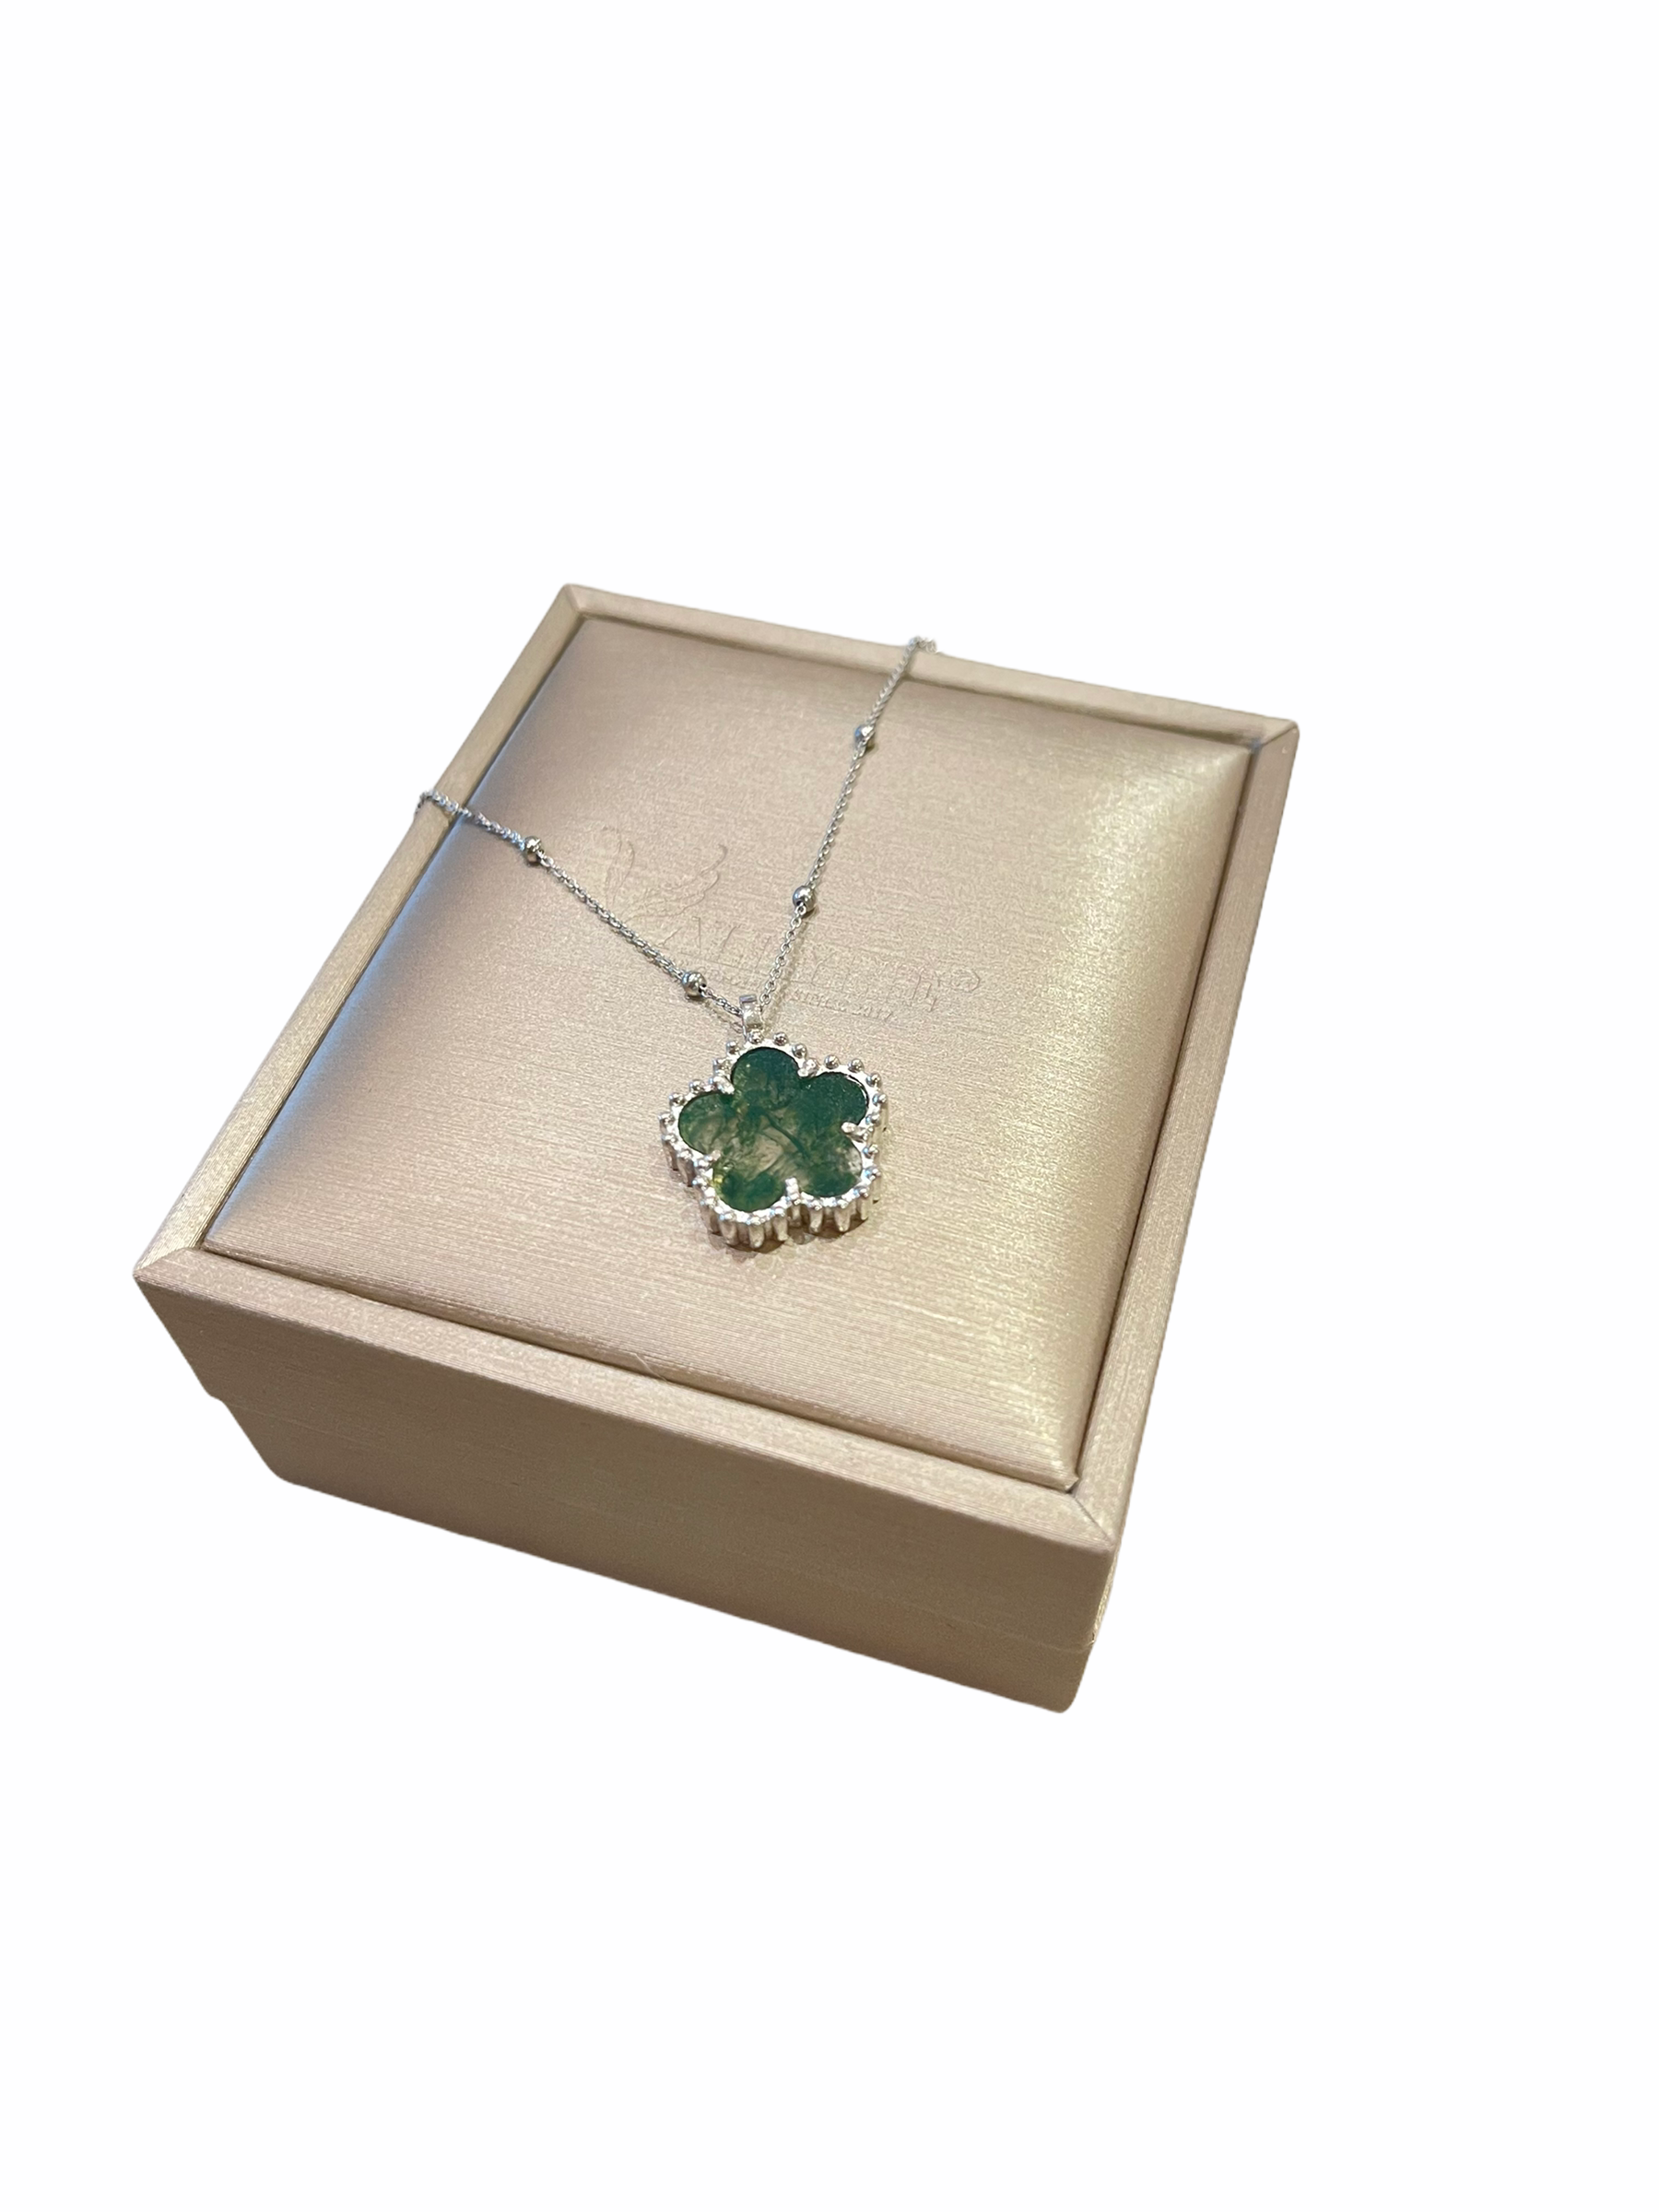 La Fleur Necklace, Green Moss Agate